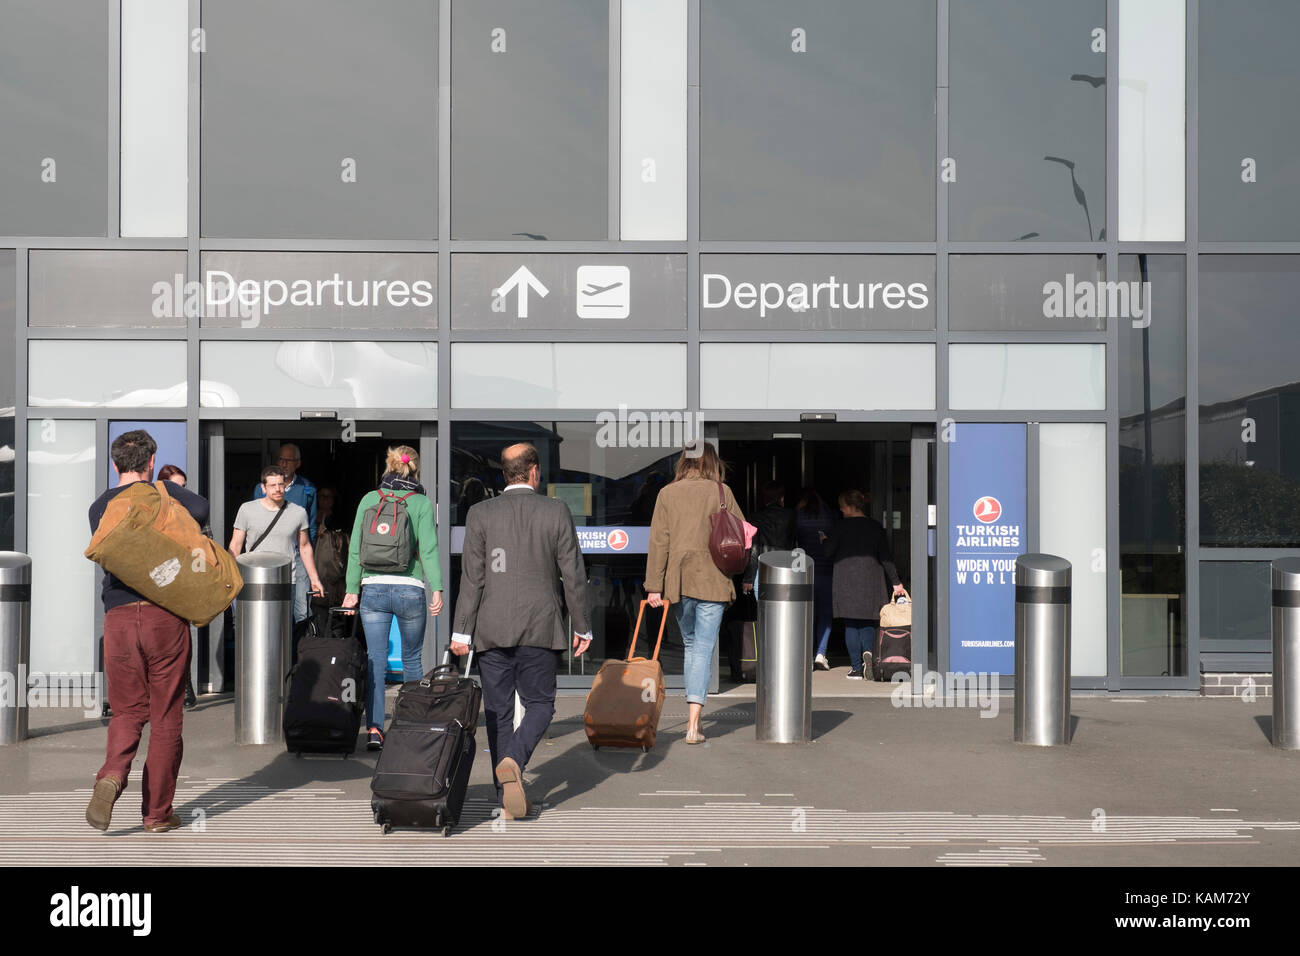 Aerostazione partenze presso l'aeroporto internazionale di Edimburgo, Lothian, Scozia, Regno Unito. Foto Stock